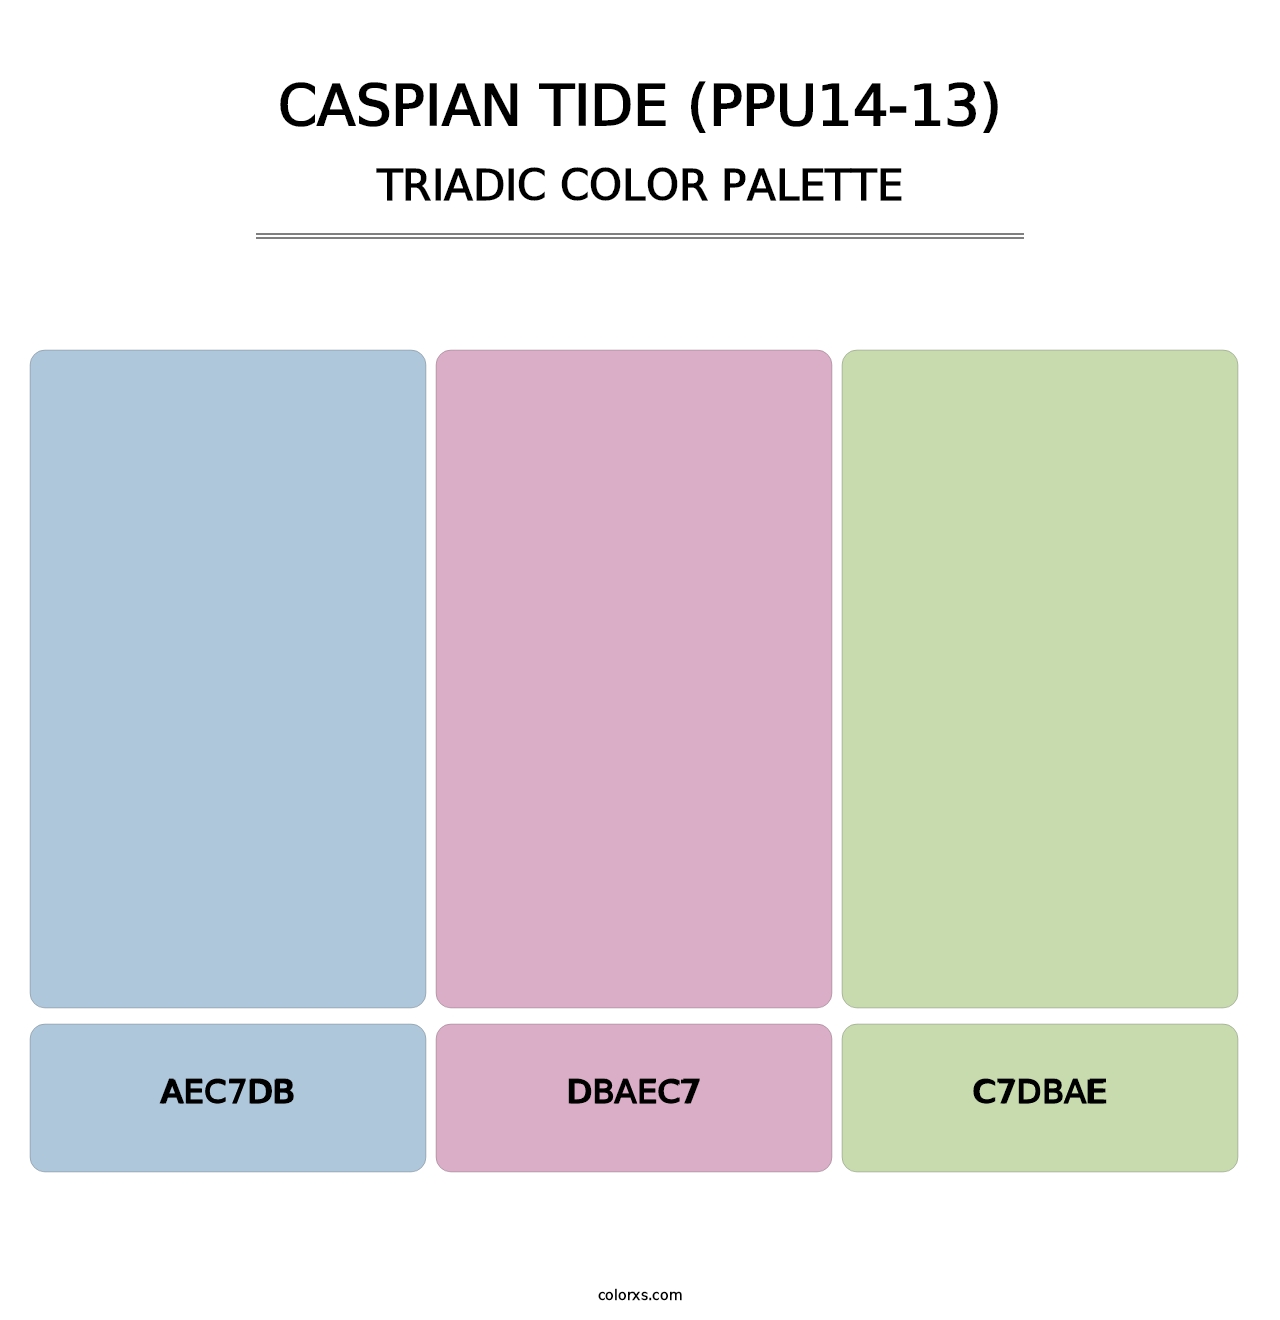 Caspian Tide (PPU14-13) - Triadic Color Palette